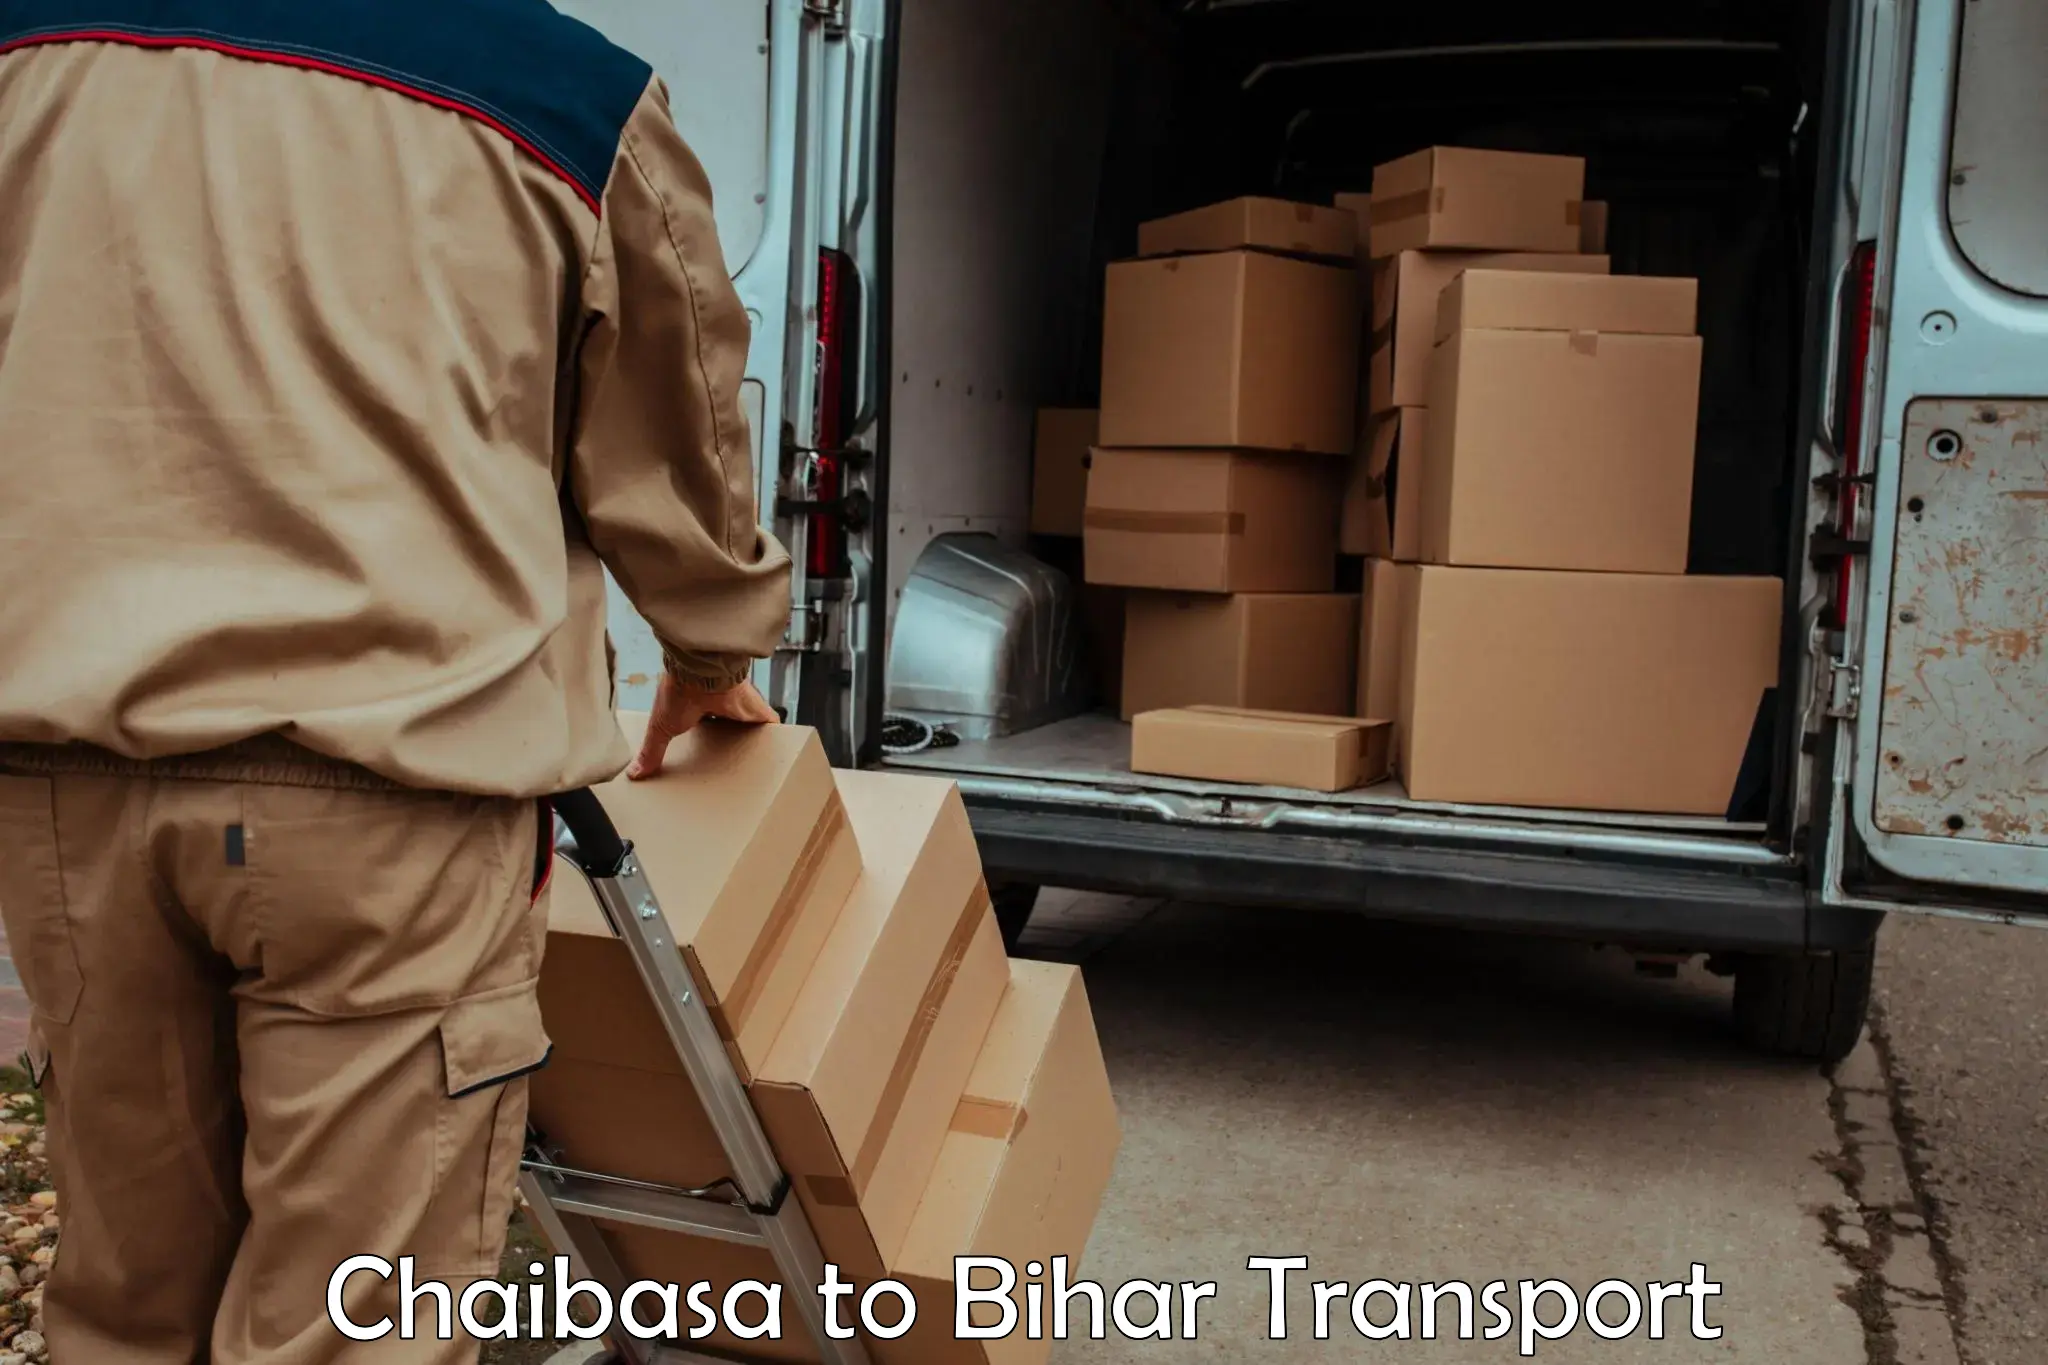 International cargo transportation services Chaibasa to Madhubani